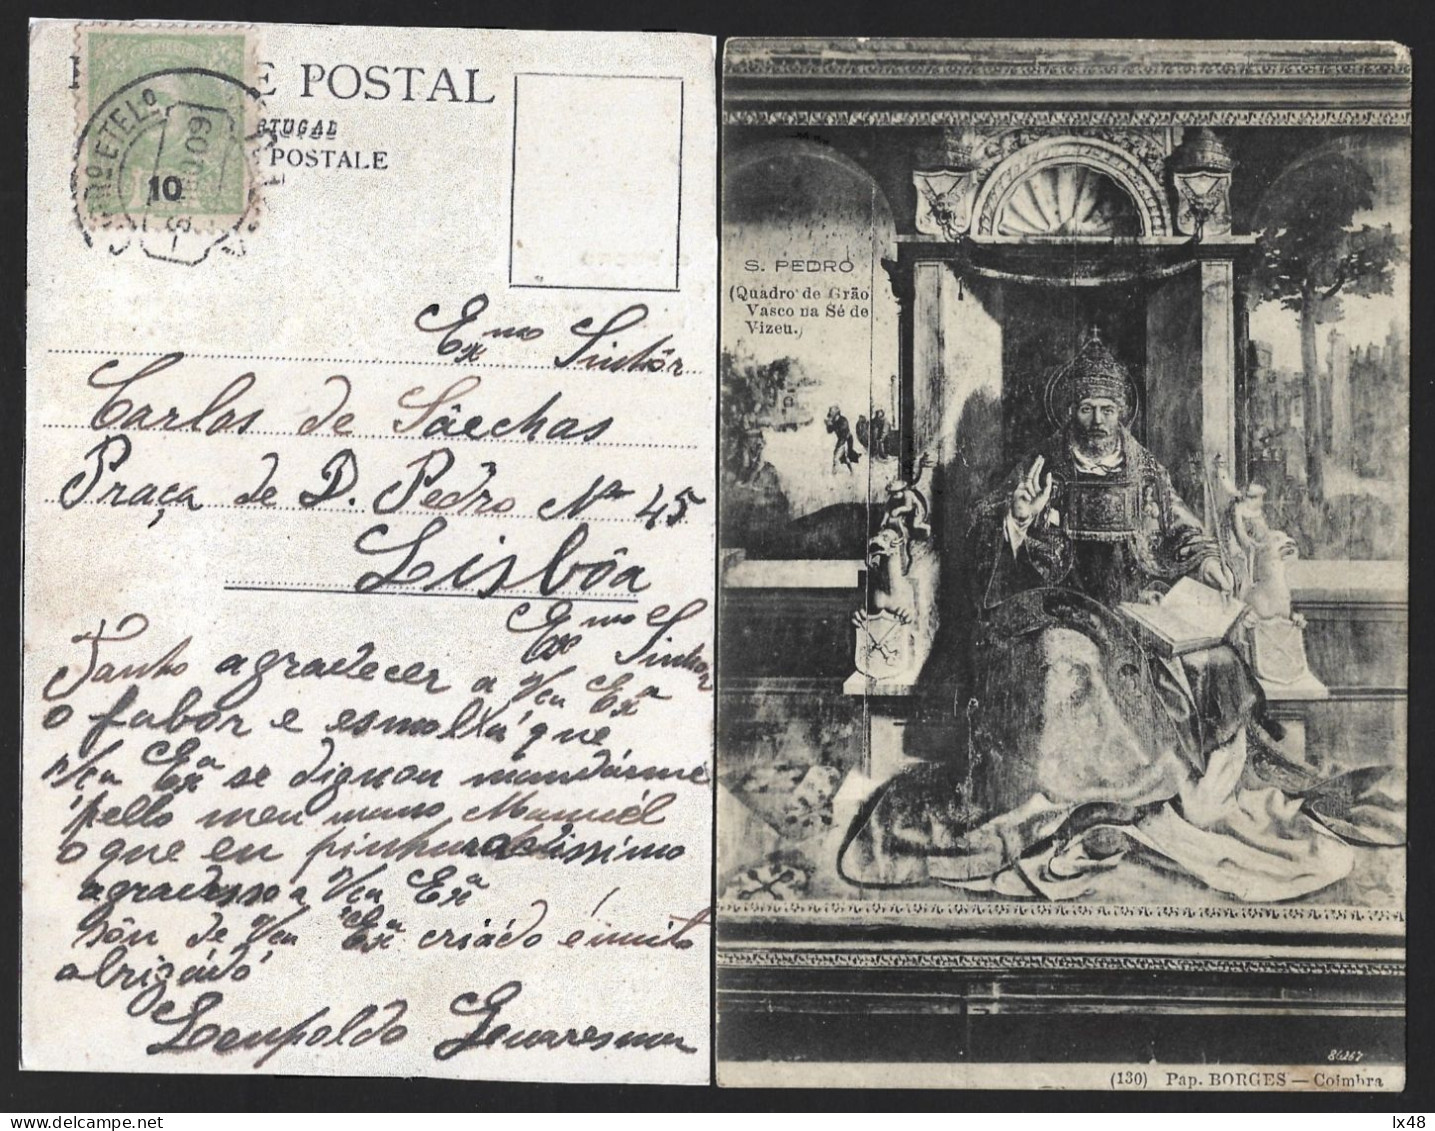 Postal Com Pintura 'S. Pedro' Quadro De Grão Vasco, Na Sé Viseu. Selo De 10 Rs D. Carlos Obliterado Em 1909 Em Viseu. - Briefe U. Dokumente